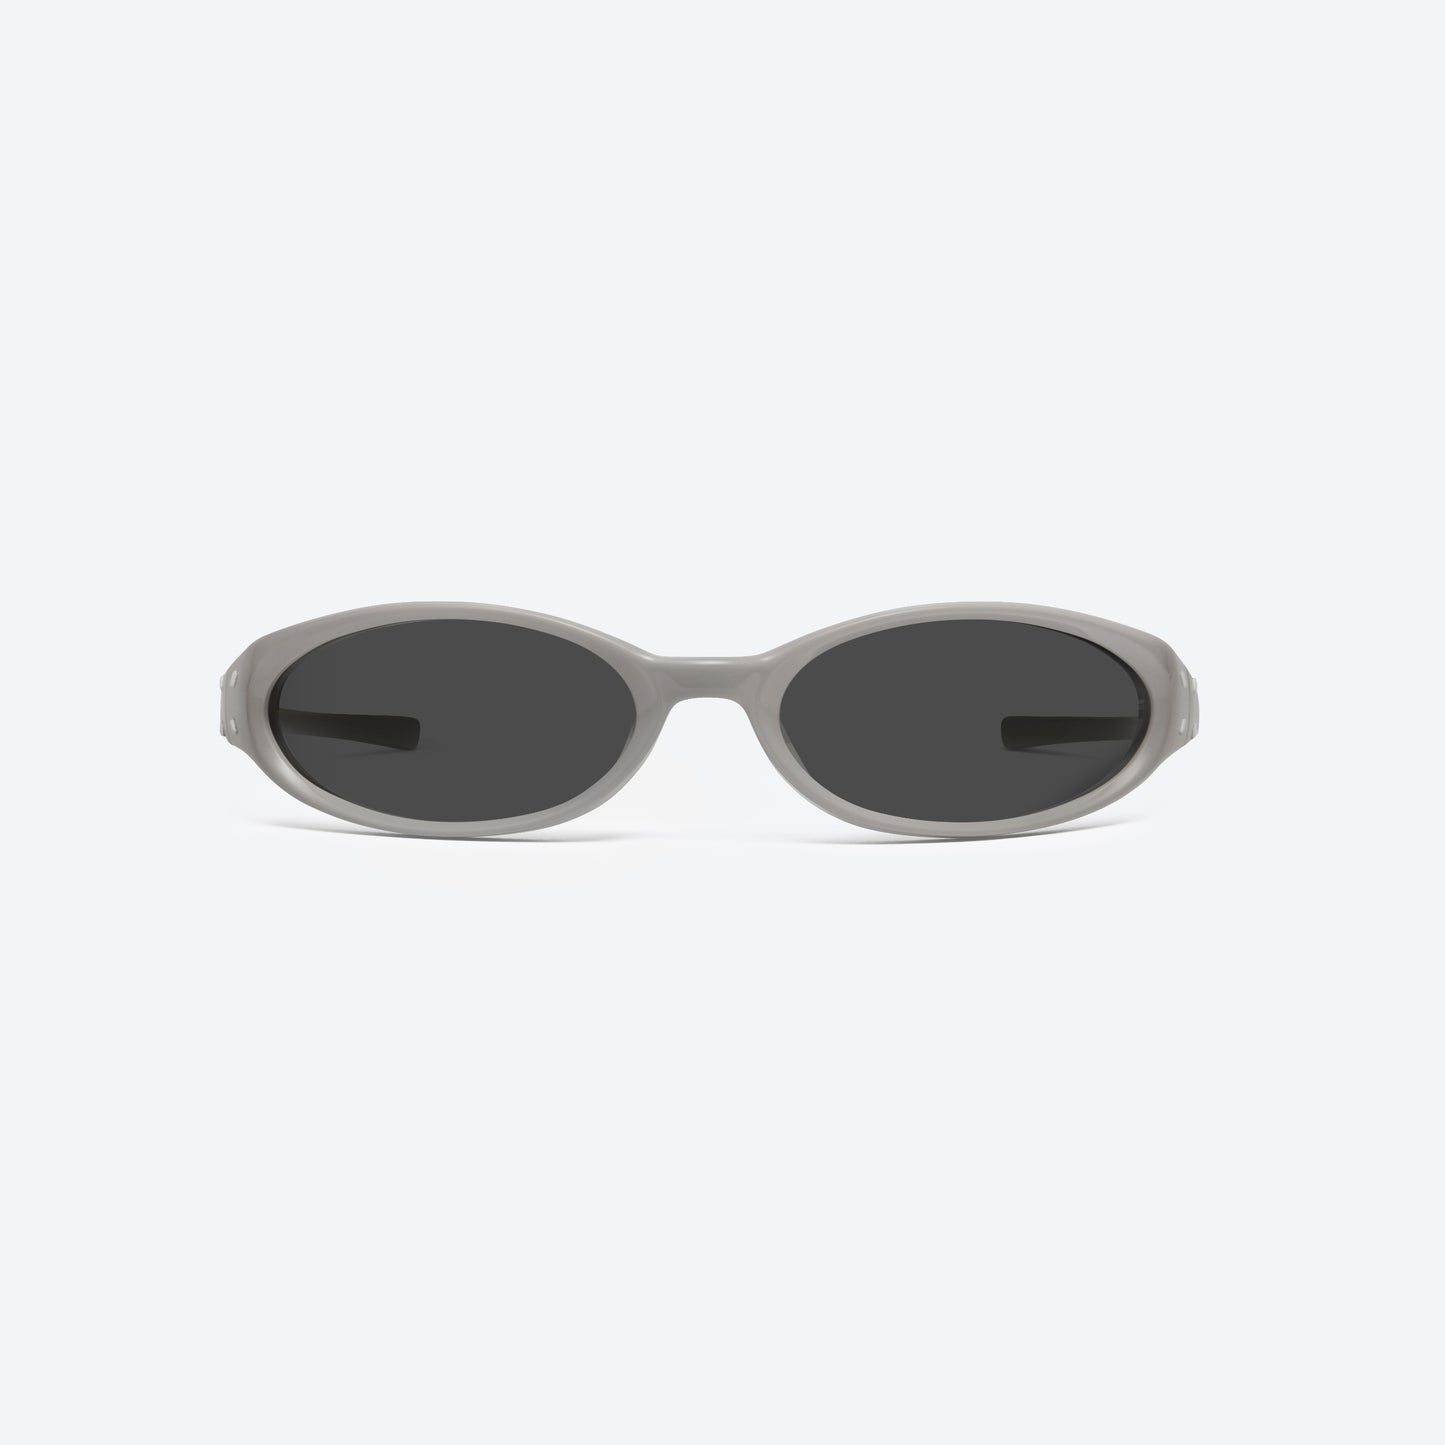 Maison Margiela x Gentle Monster Sunglasses MM104 G10